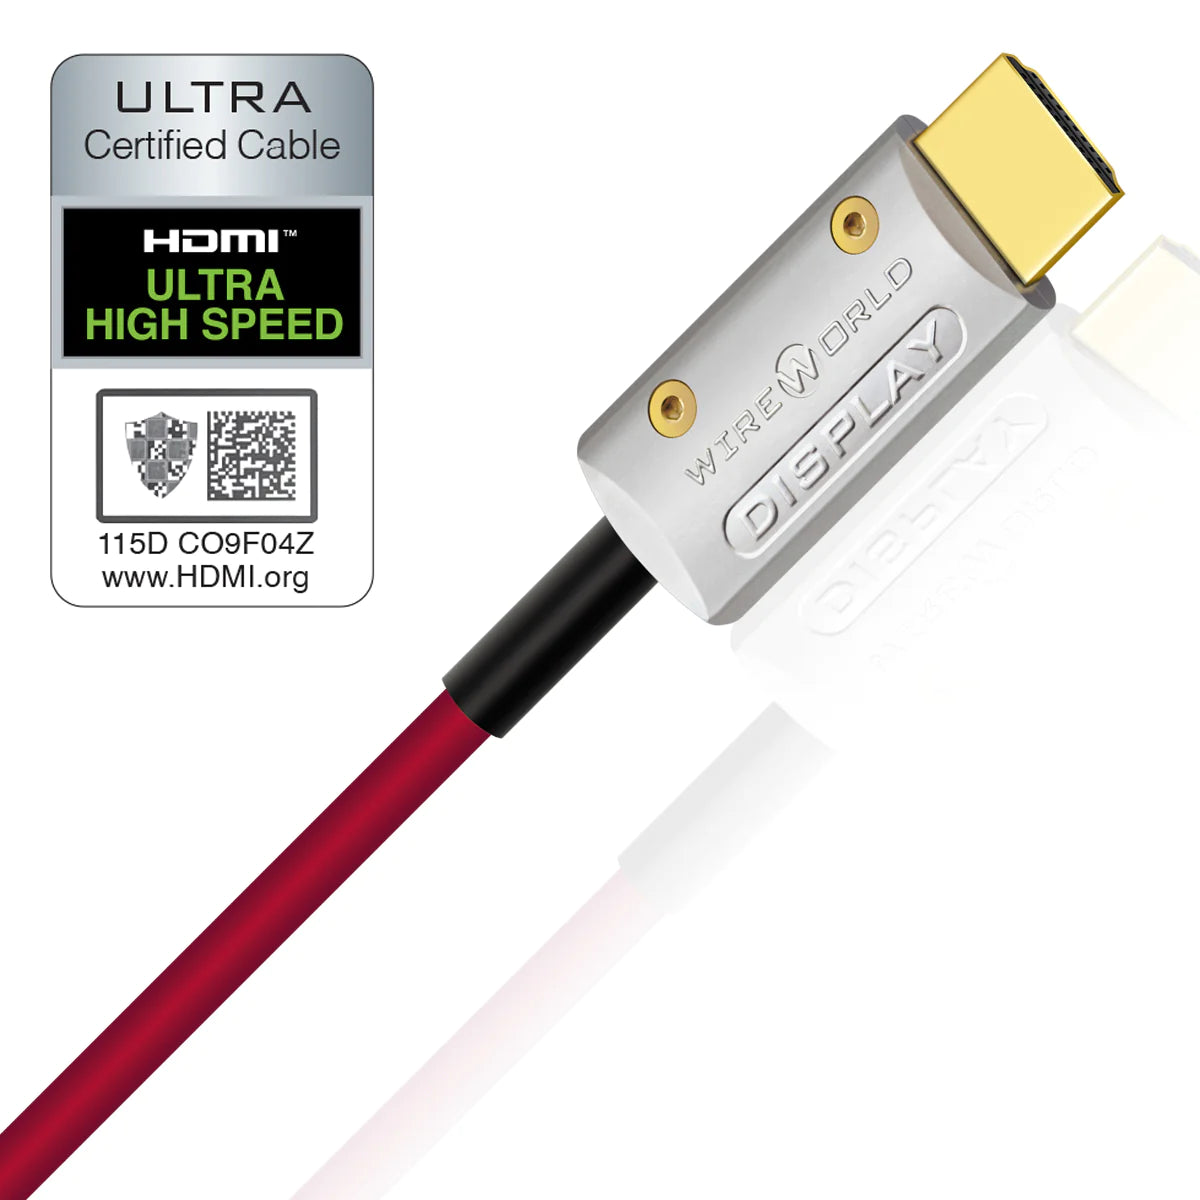 WireWorld Starlight 48 Fiber Optic HDMI Cable